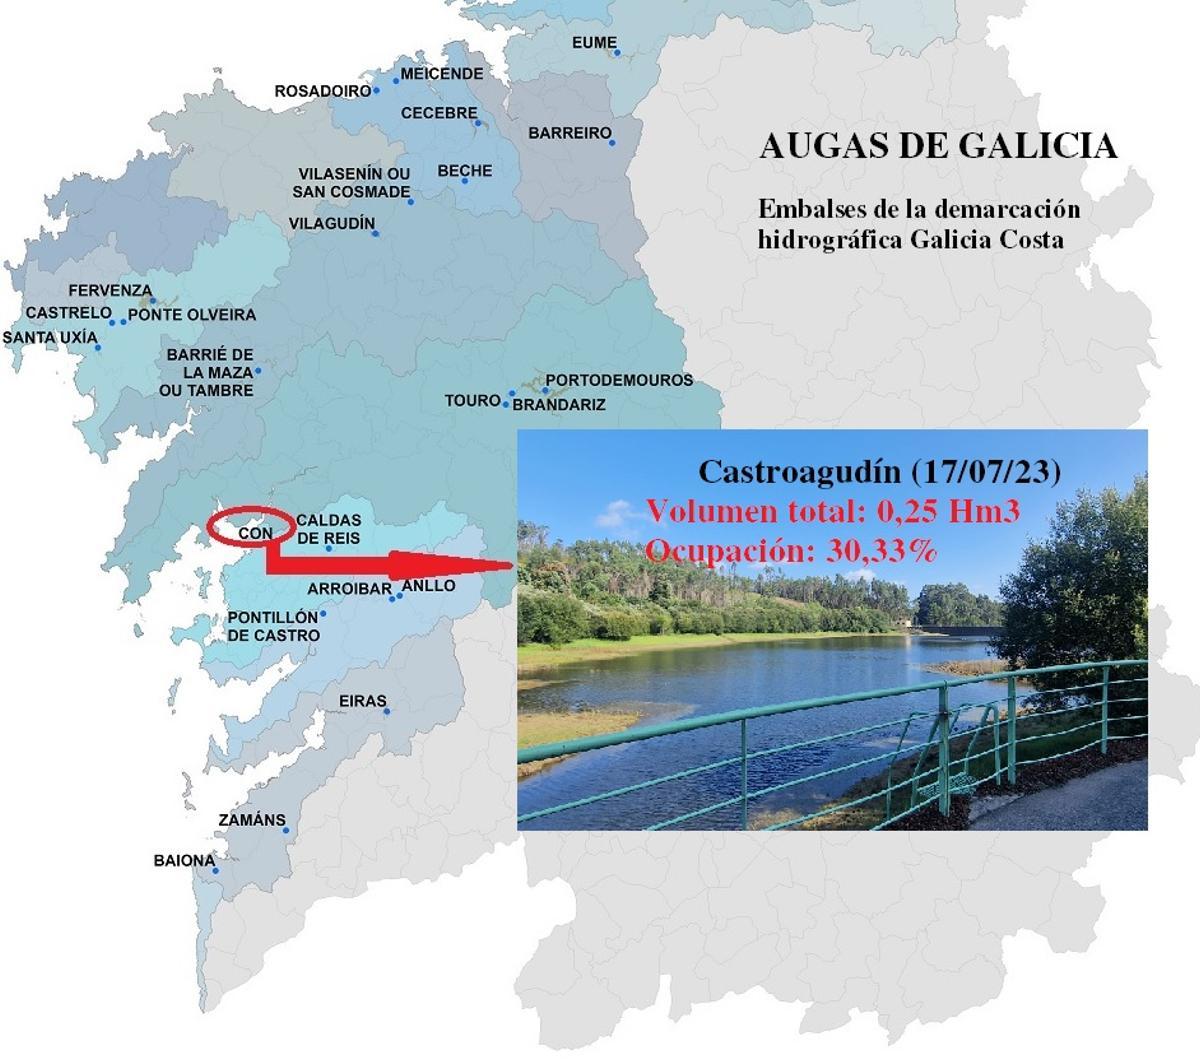 Mapa en el que se sitúan los diferentes embalses y se muestra el de Castroagudín (Vilagarcía).